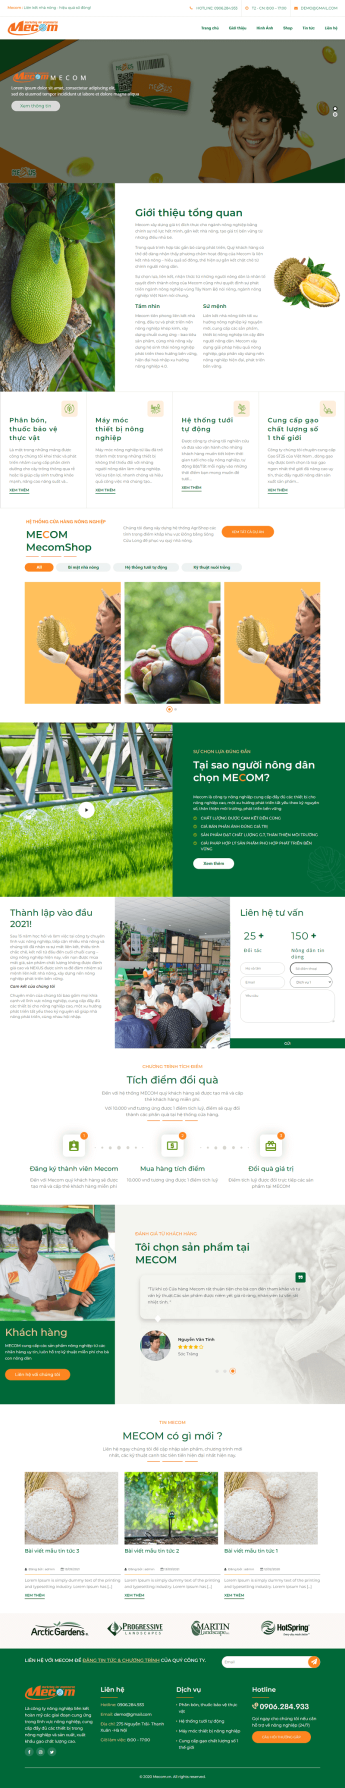 Mẫu thiết kế web FarmFoods – Thực Phẩm, nông nghiệp